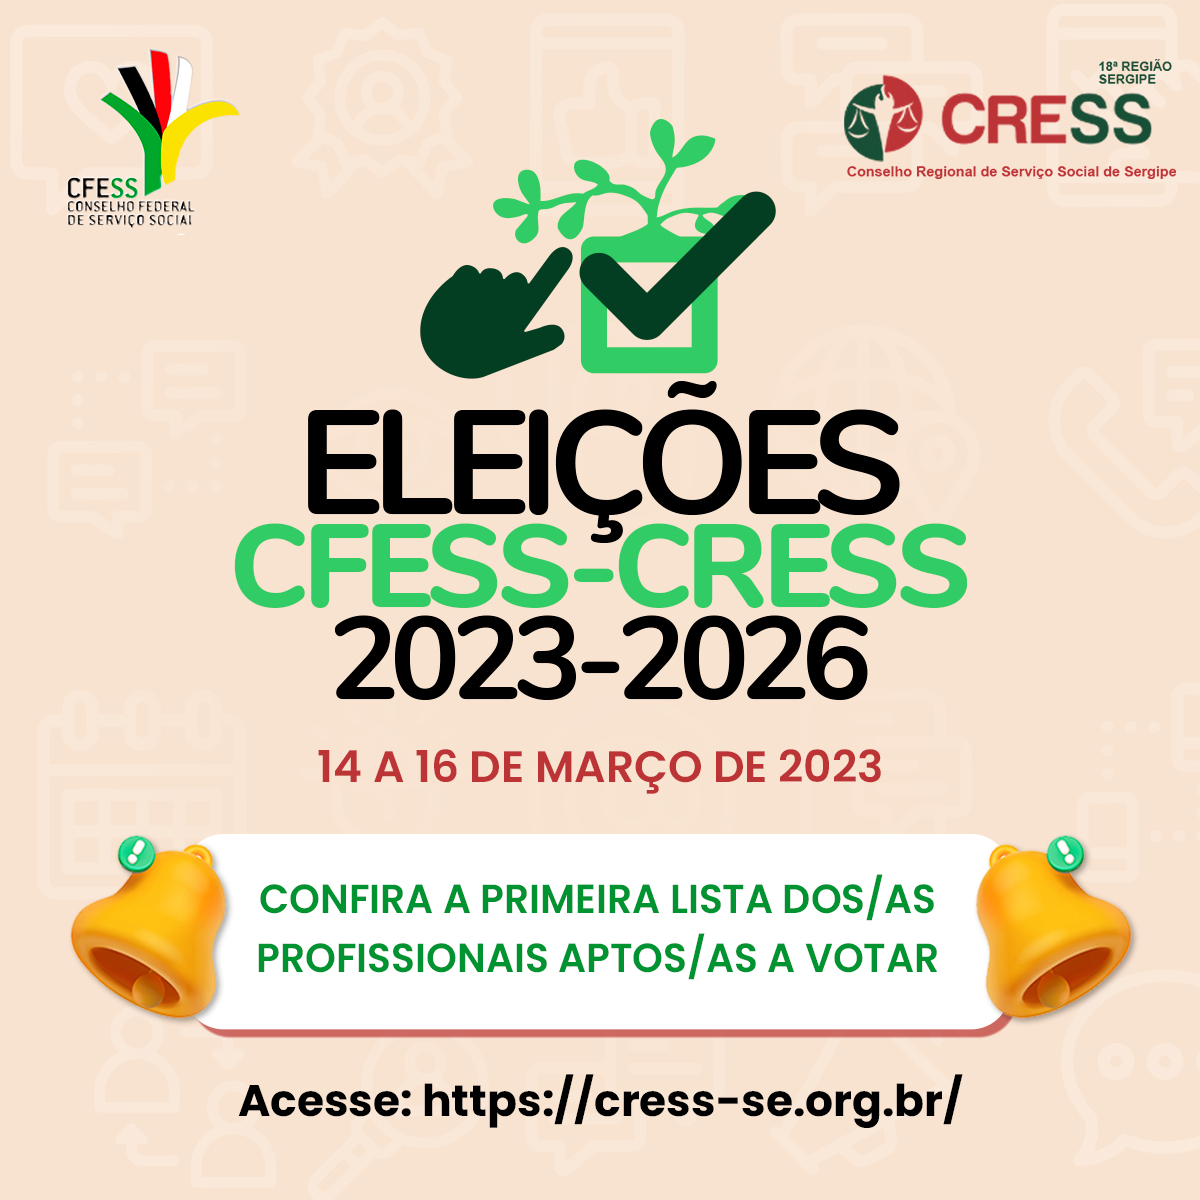 Eleições CFESS-CRESS: CRESS-SE divulga primeira lista de profissionais aptos/as a votar